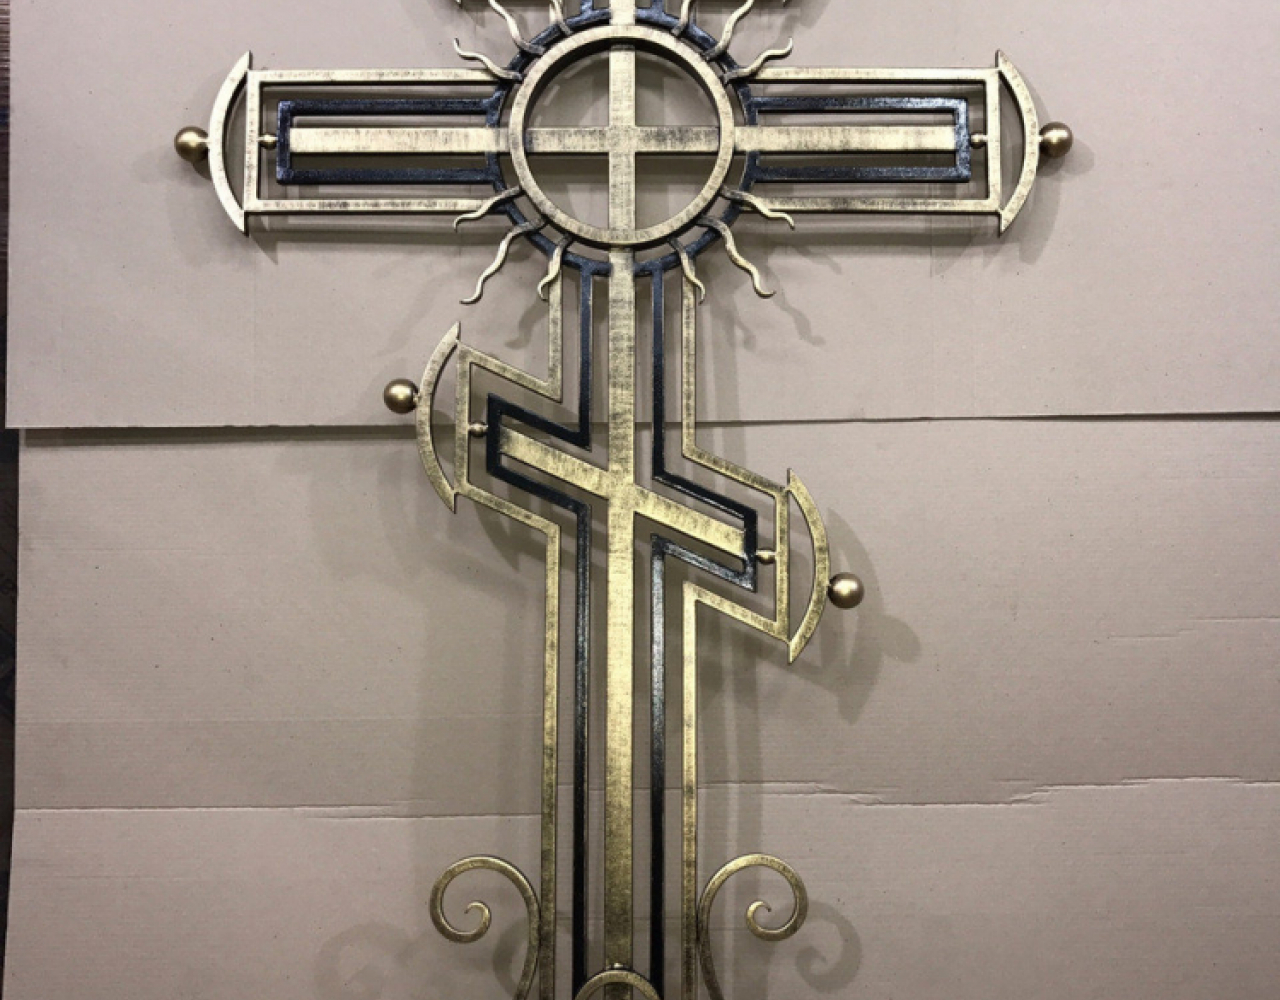 Золоченый кованый крест на могилу РК-035